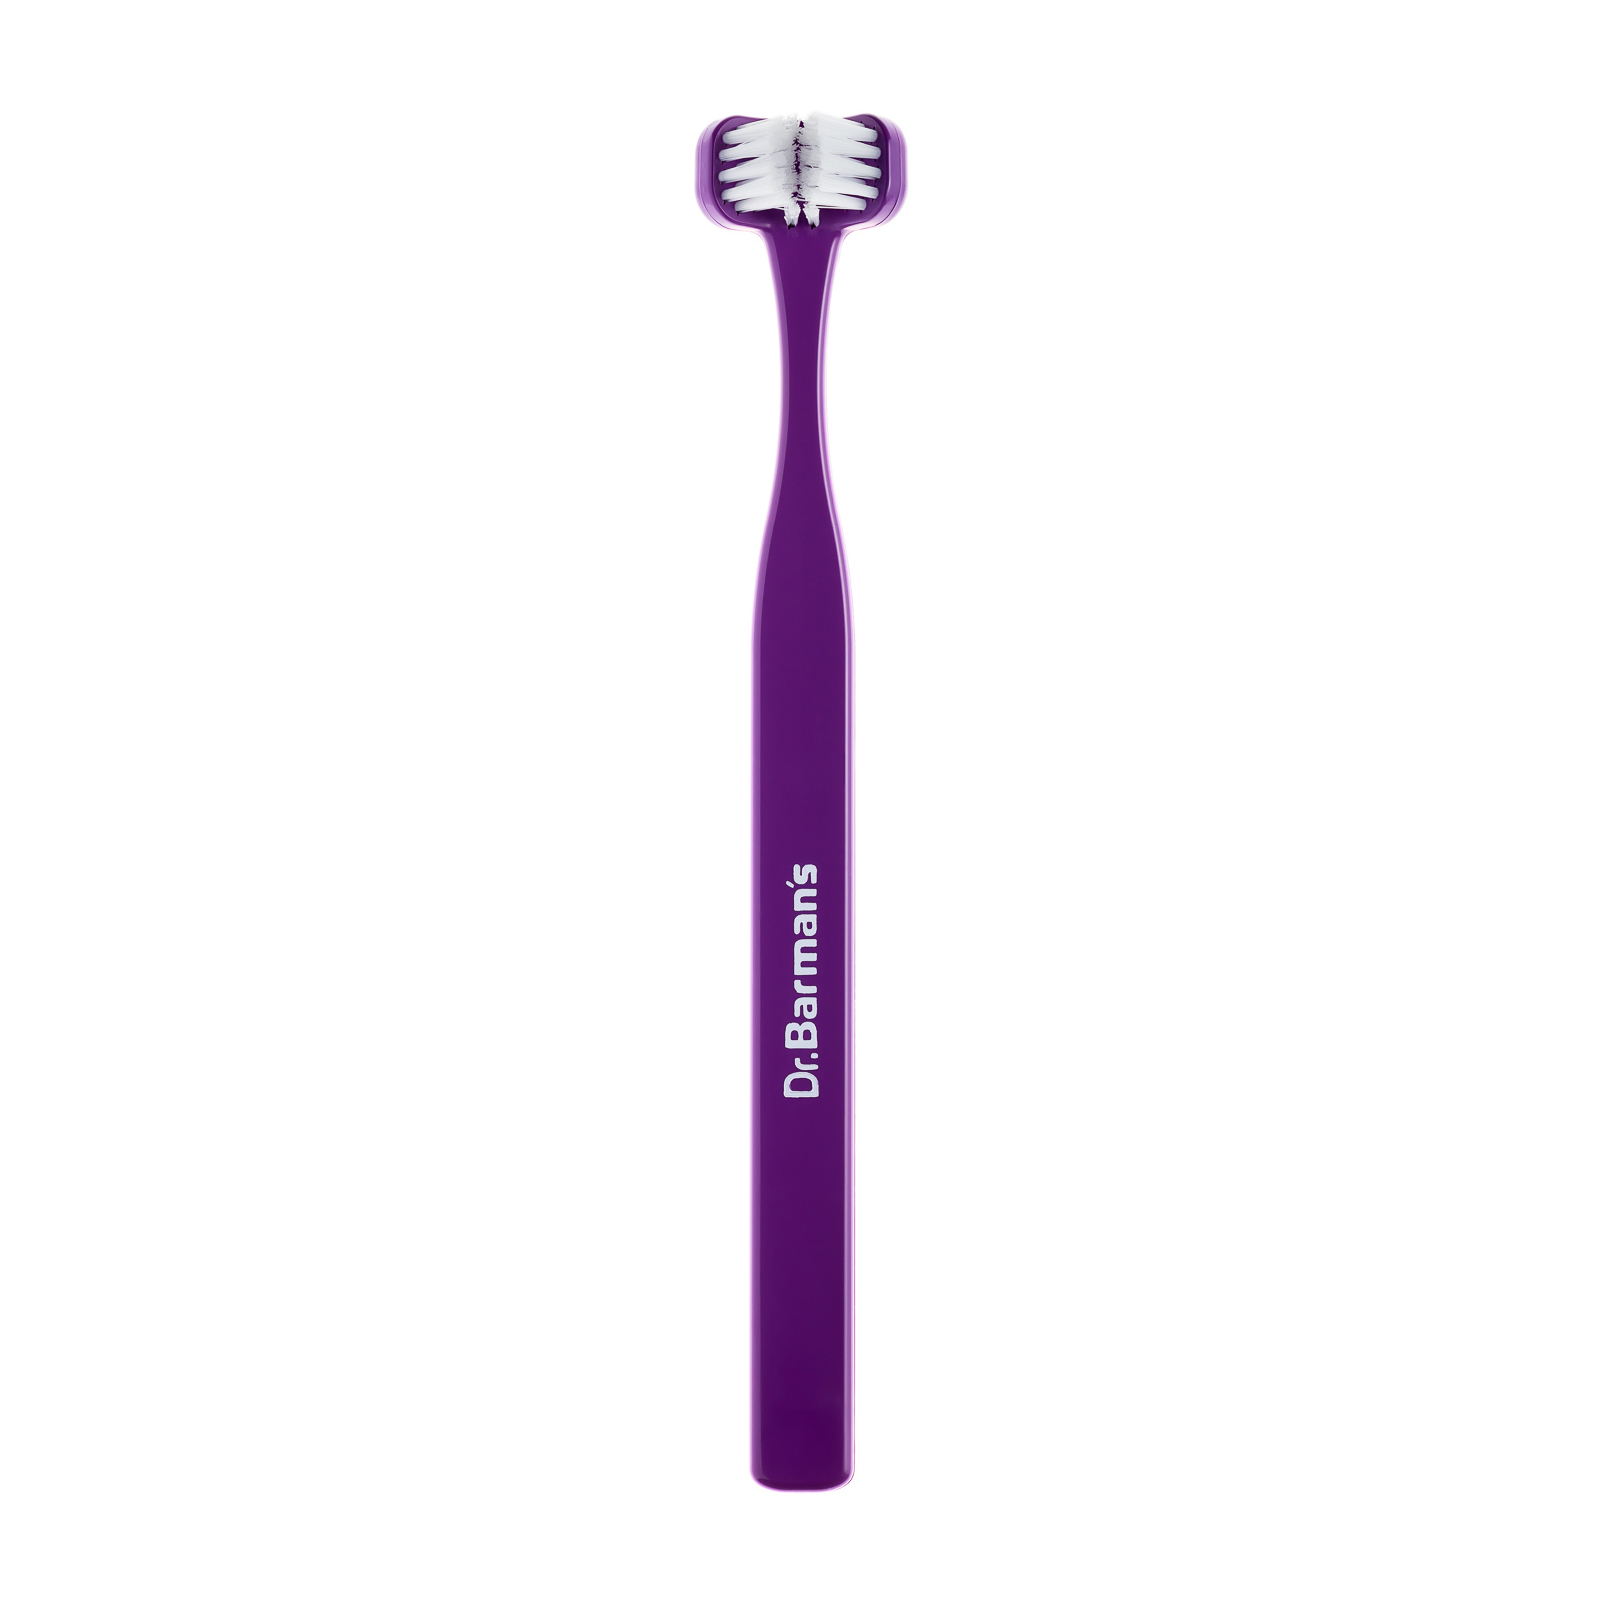 Зубная щетка Dr. Barman's Superbrush Compact Трехсторонняя Мягкая Фиолетовая (7032572876328-violet)